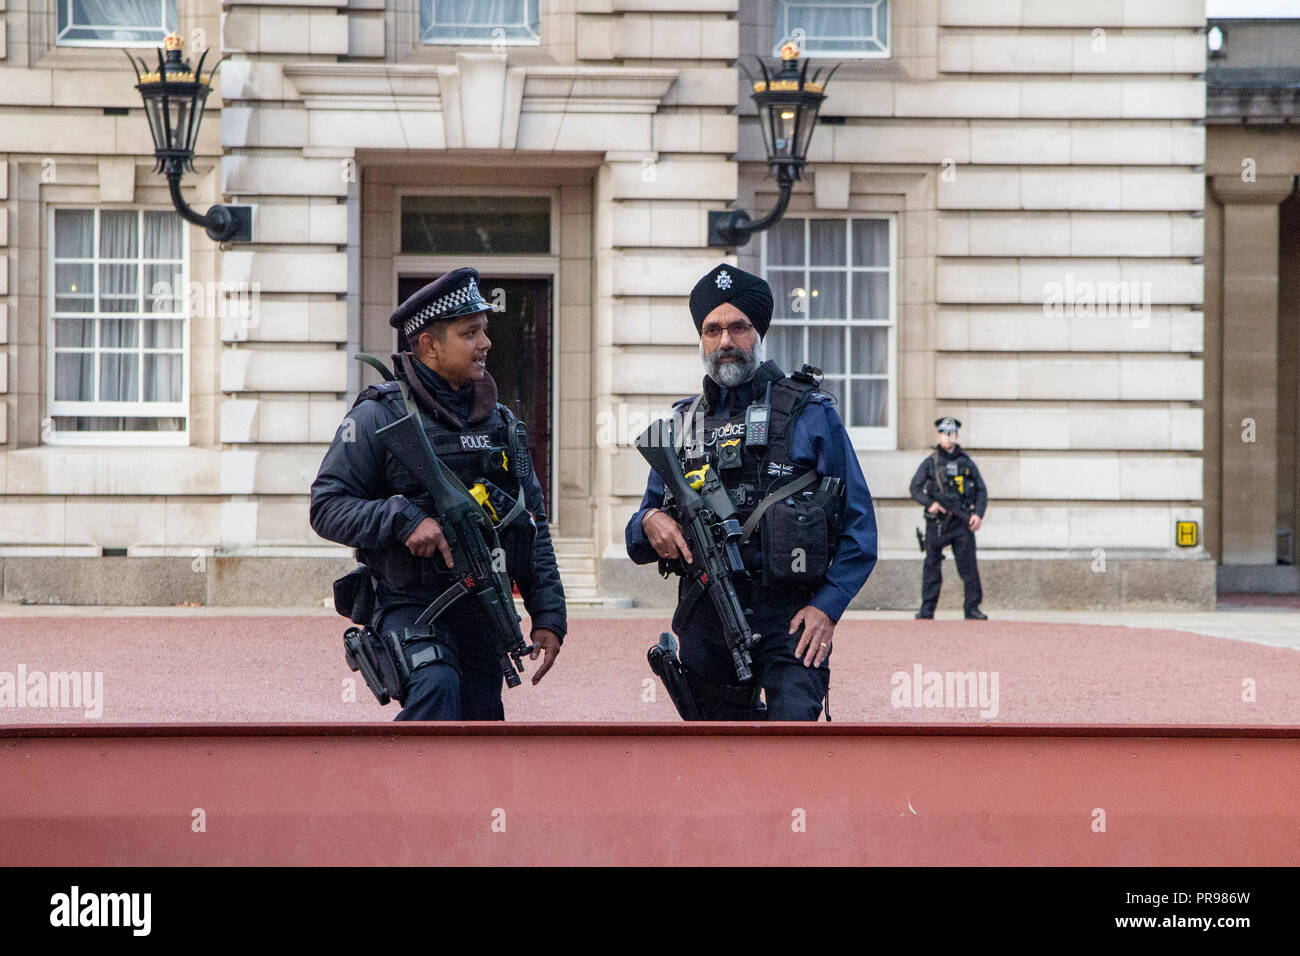 Ein Sikh (oder siqh) Polizist in einem turban und einem muslimischen Polizisten außerhalb der Buckingham Palace Stockfoto